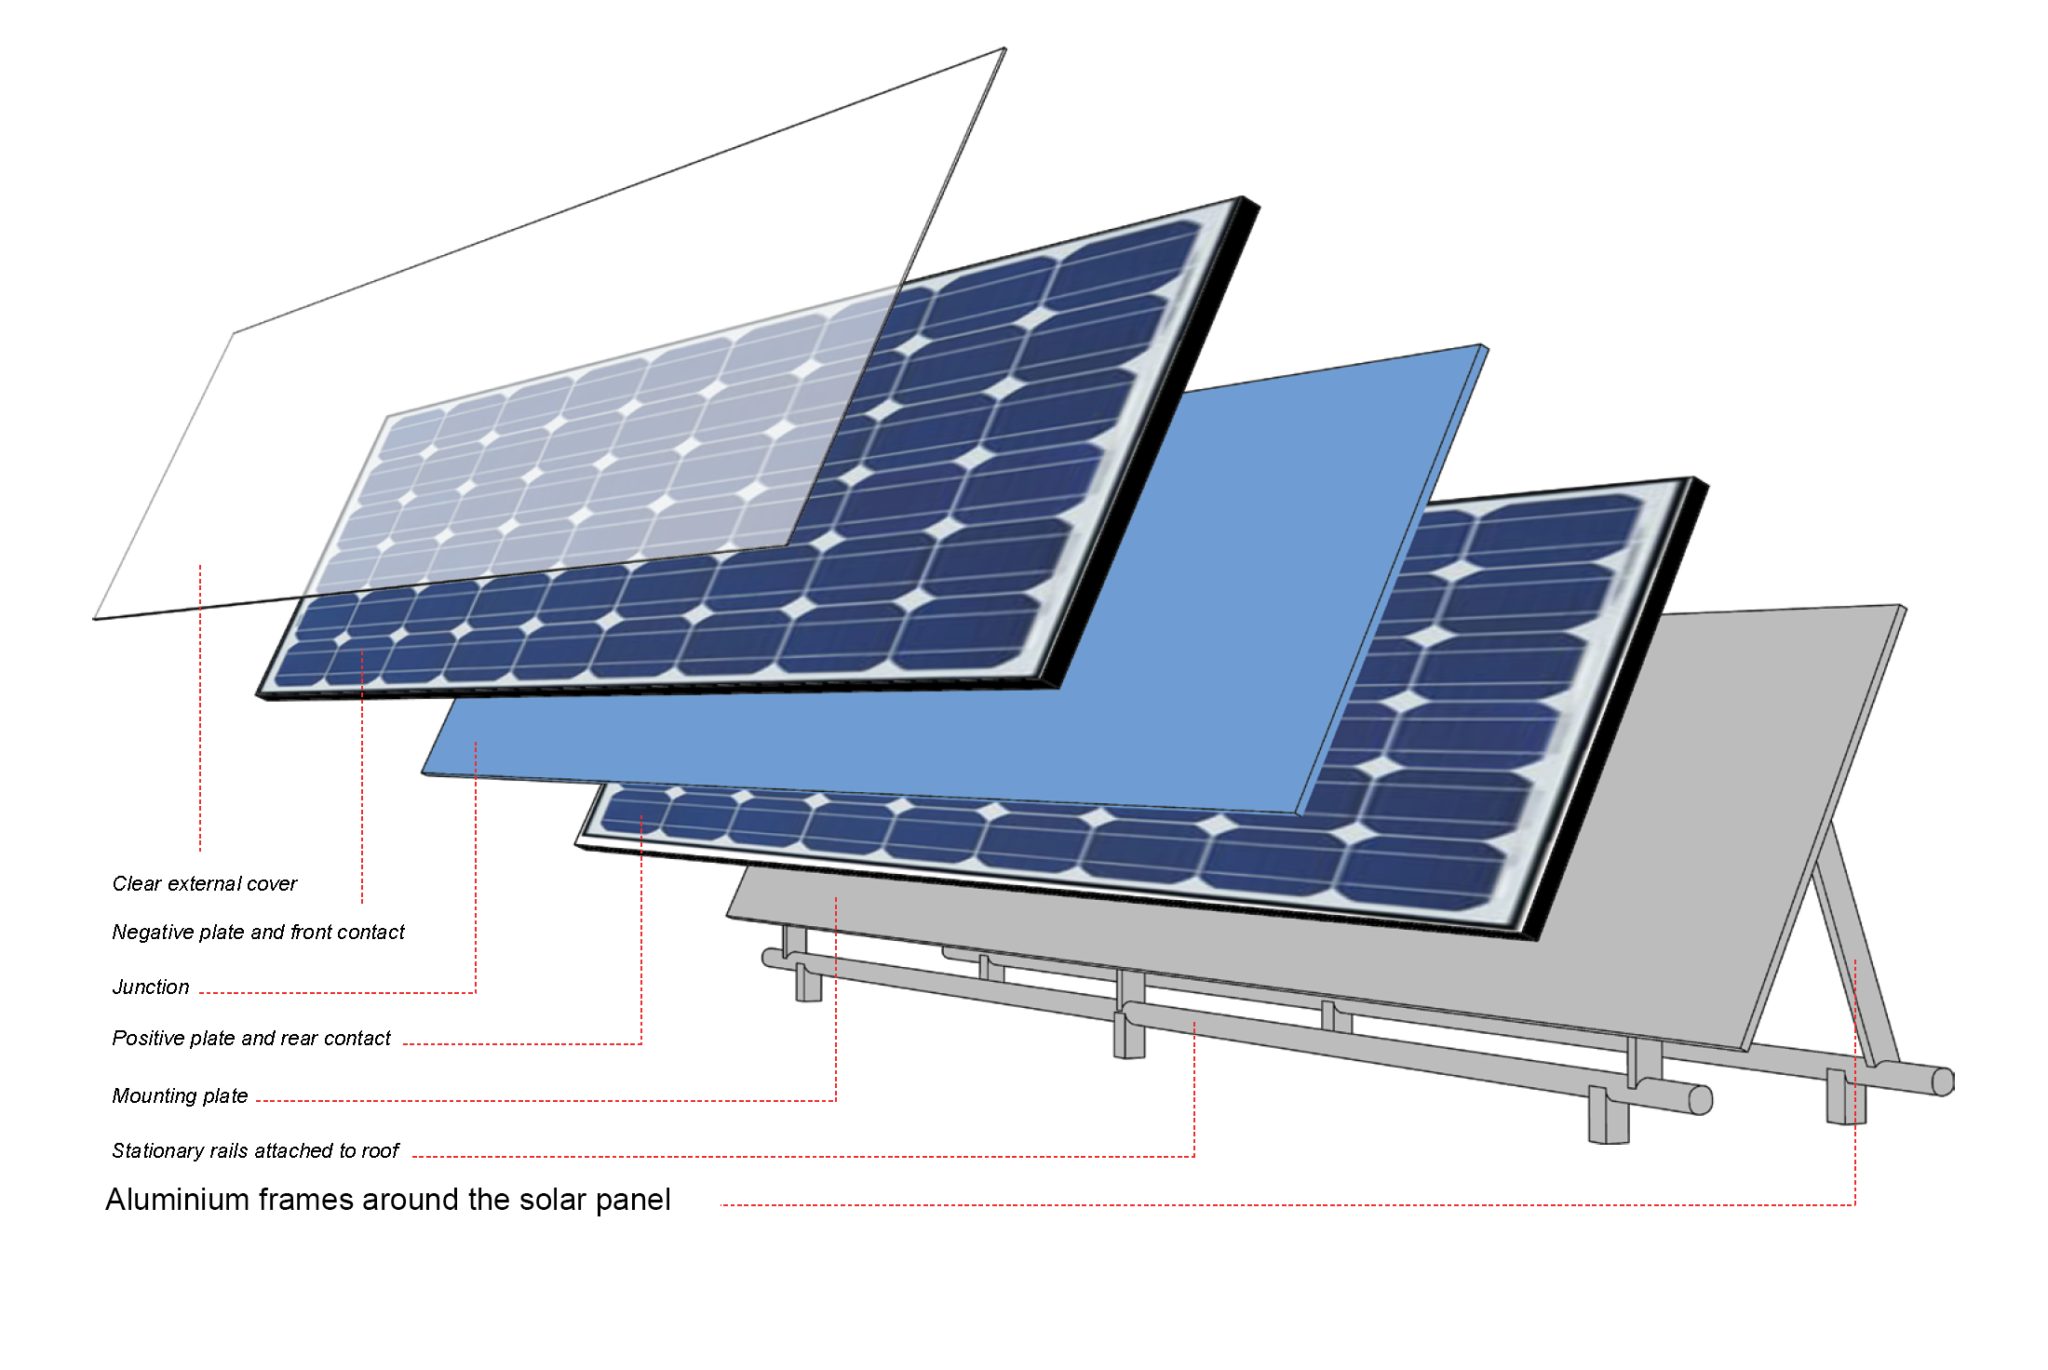 Доступными словами принципы работы солнечных батарей